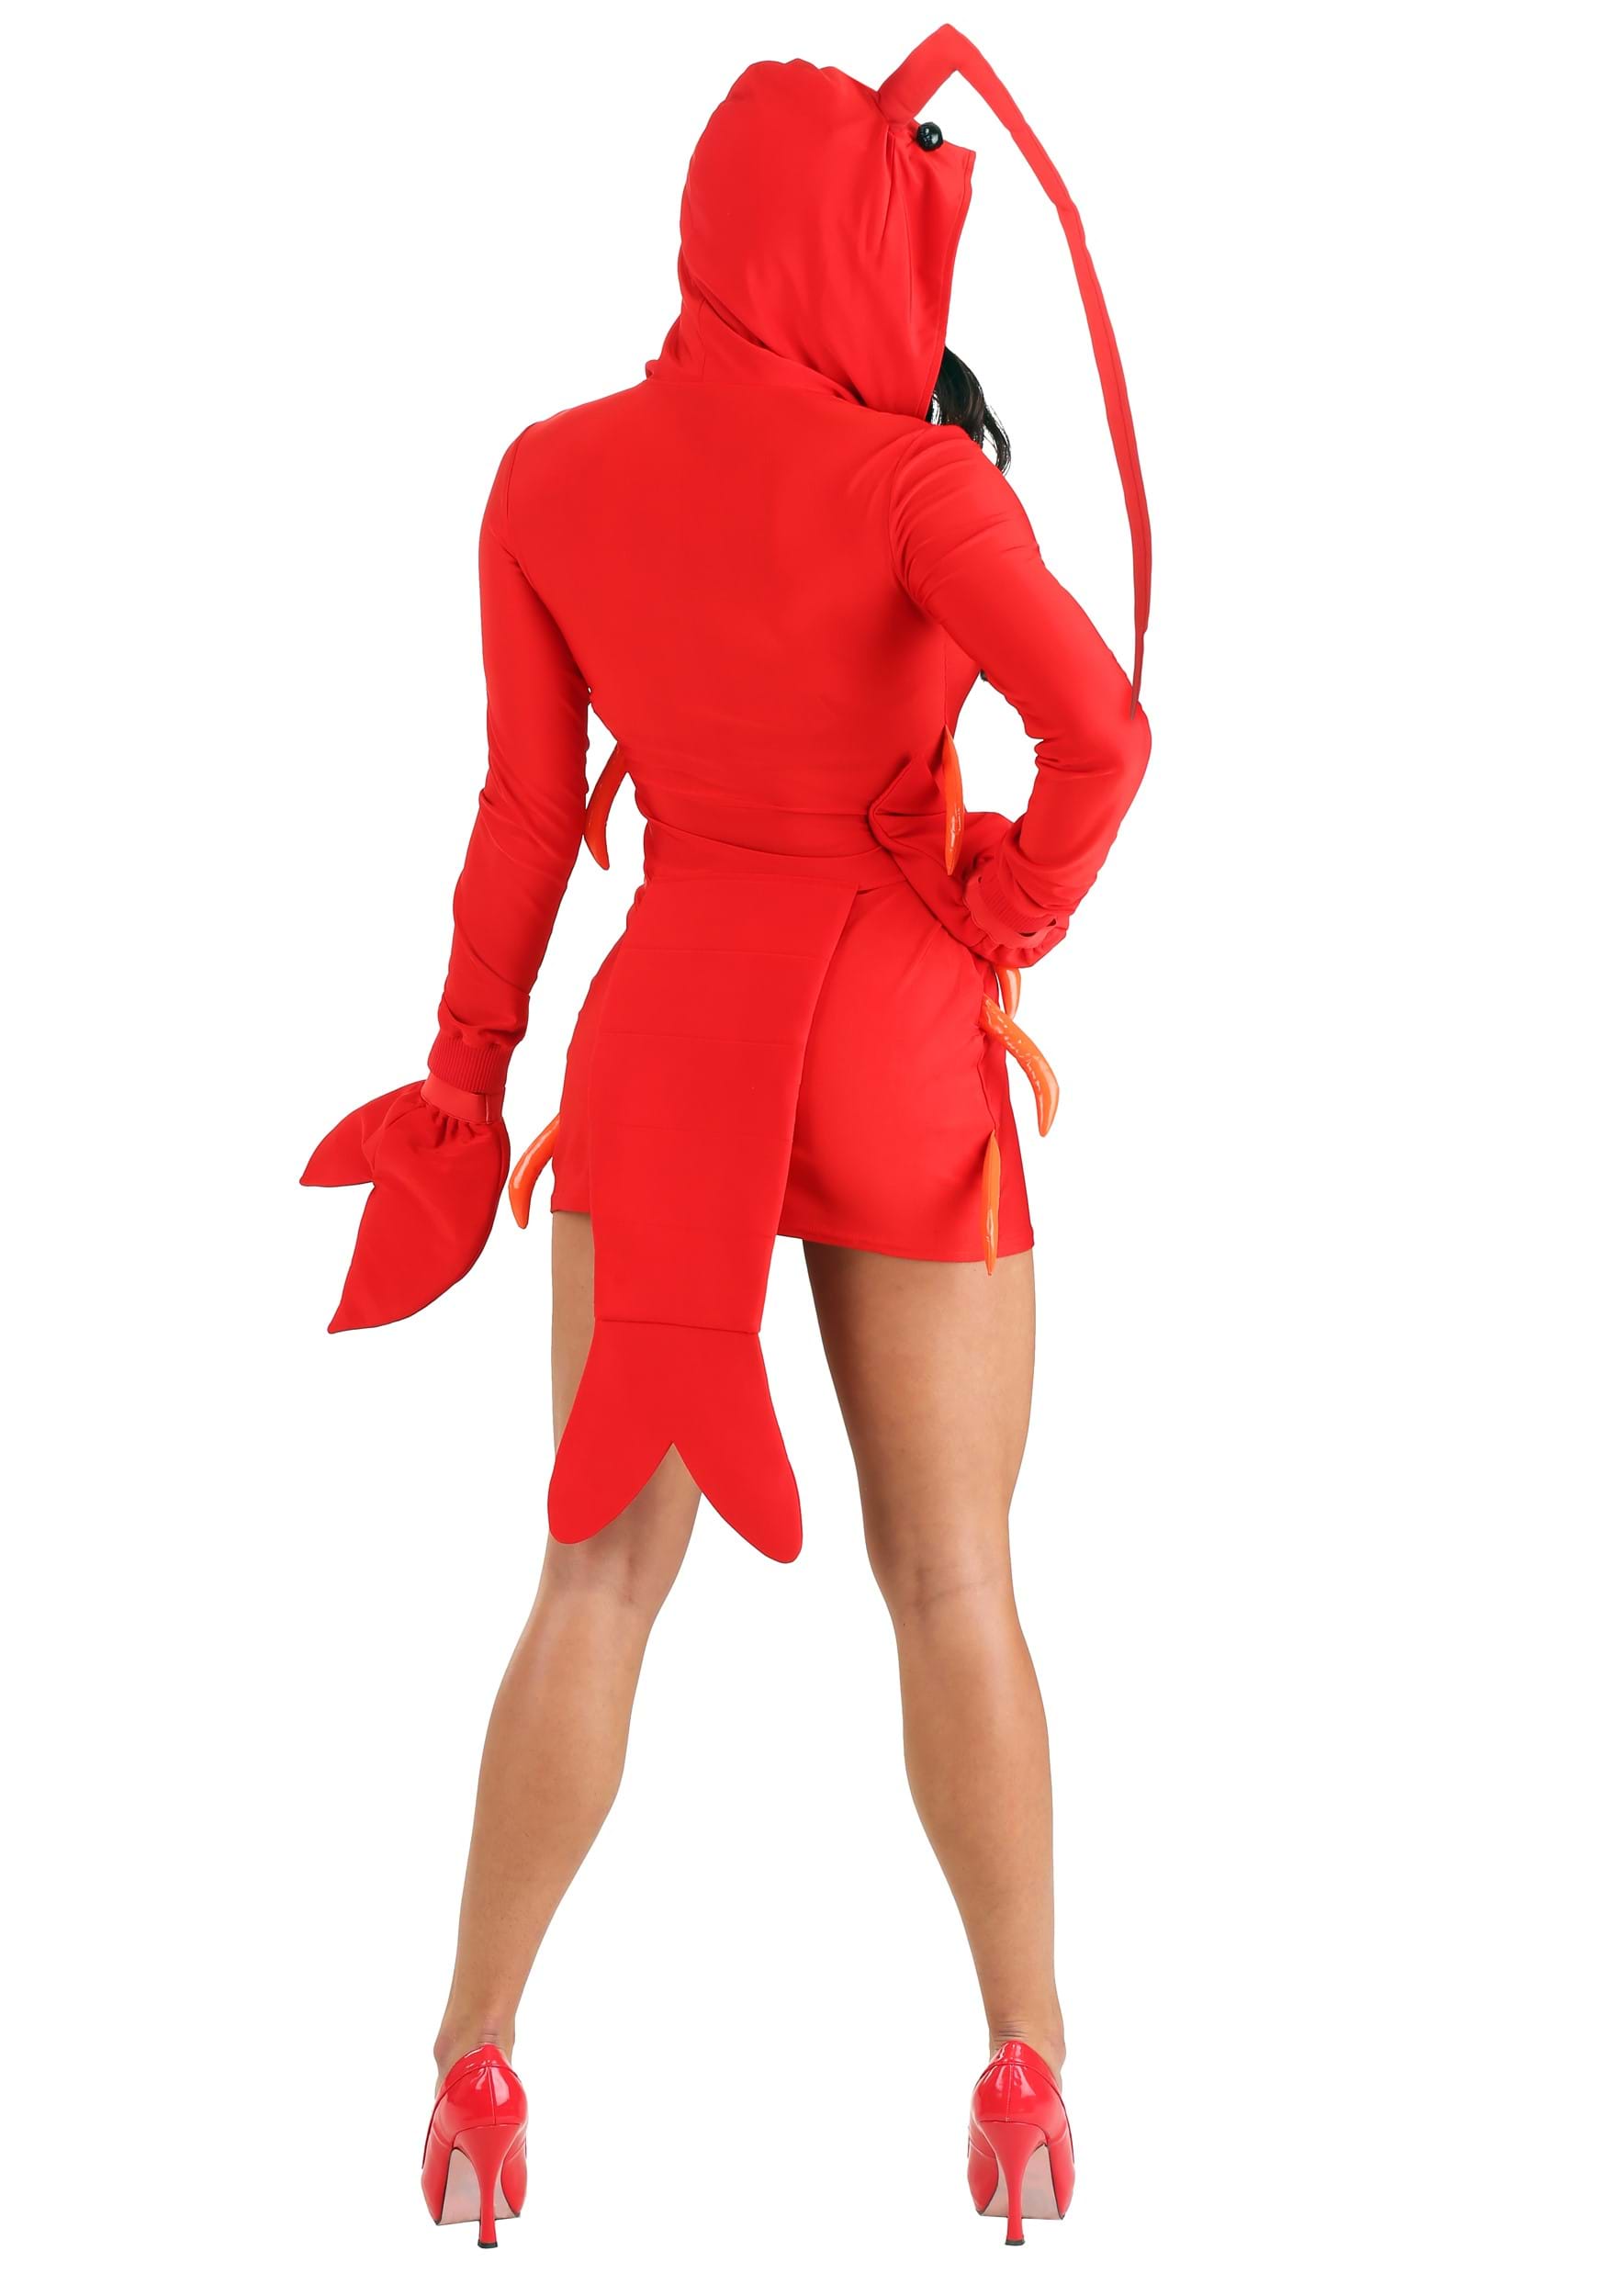 Glamorous Lobster Women's Costume